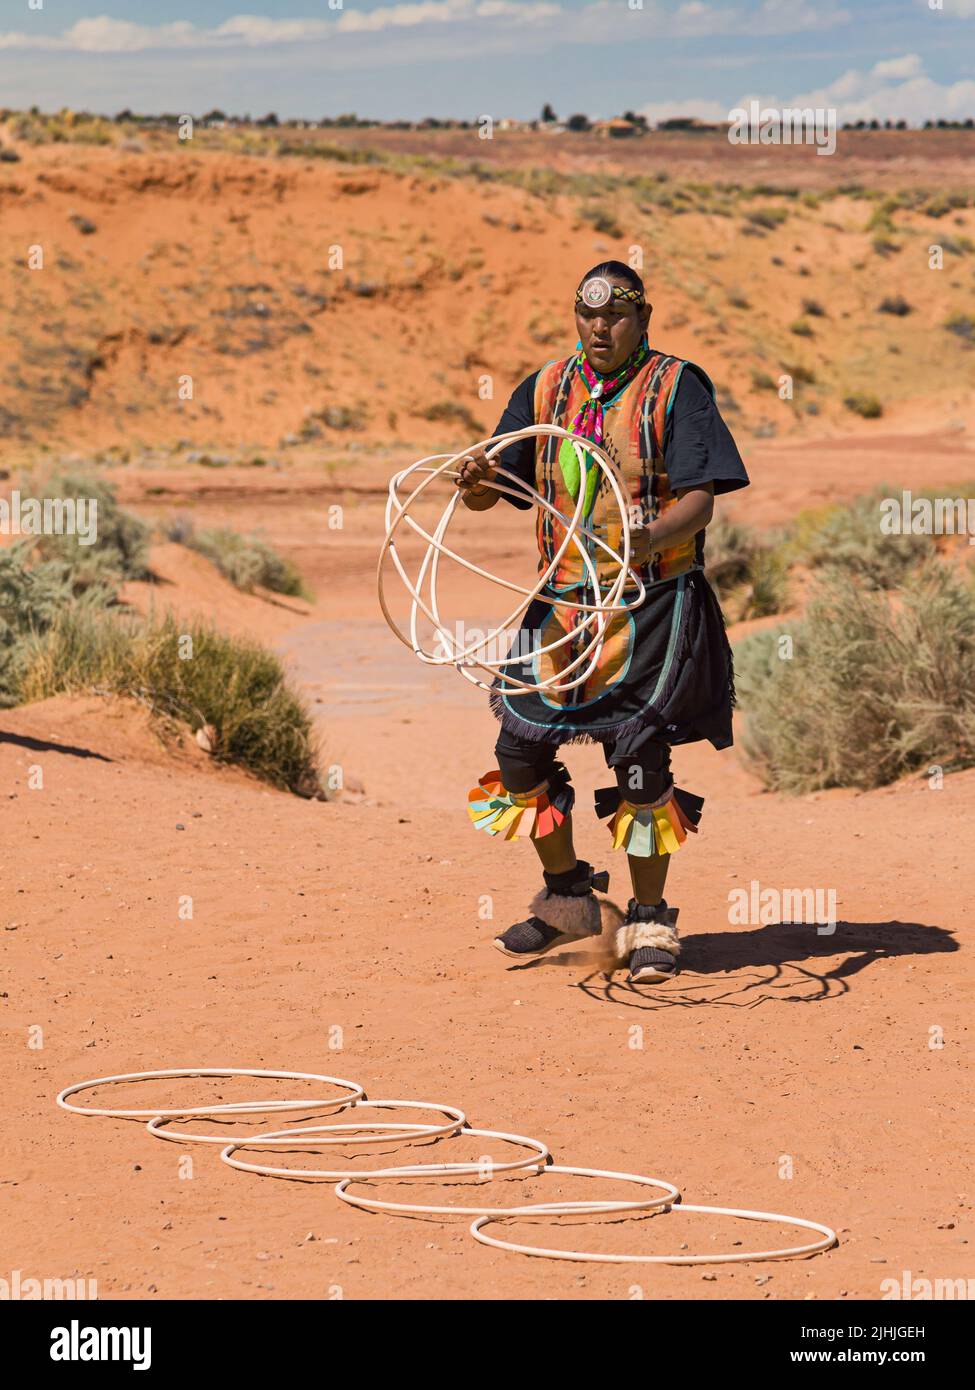 Page, Arizona - 5 de septiembre de 2019: El hombre navajo realiza la danza tradicional del aro en Page, Arizona, Estados Unidos. Foto de stock